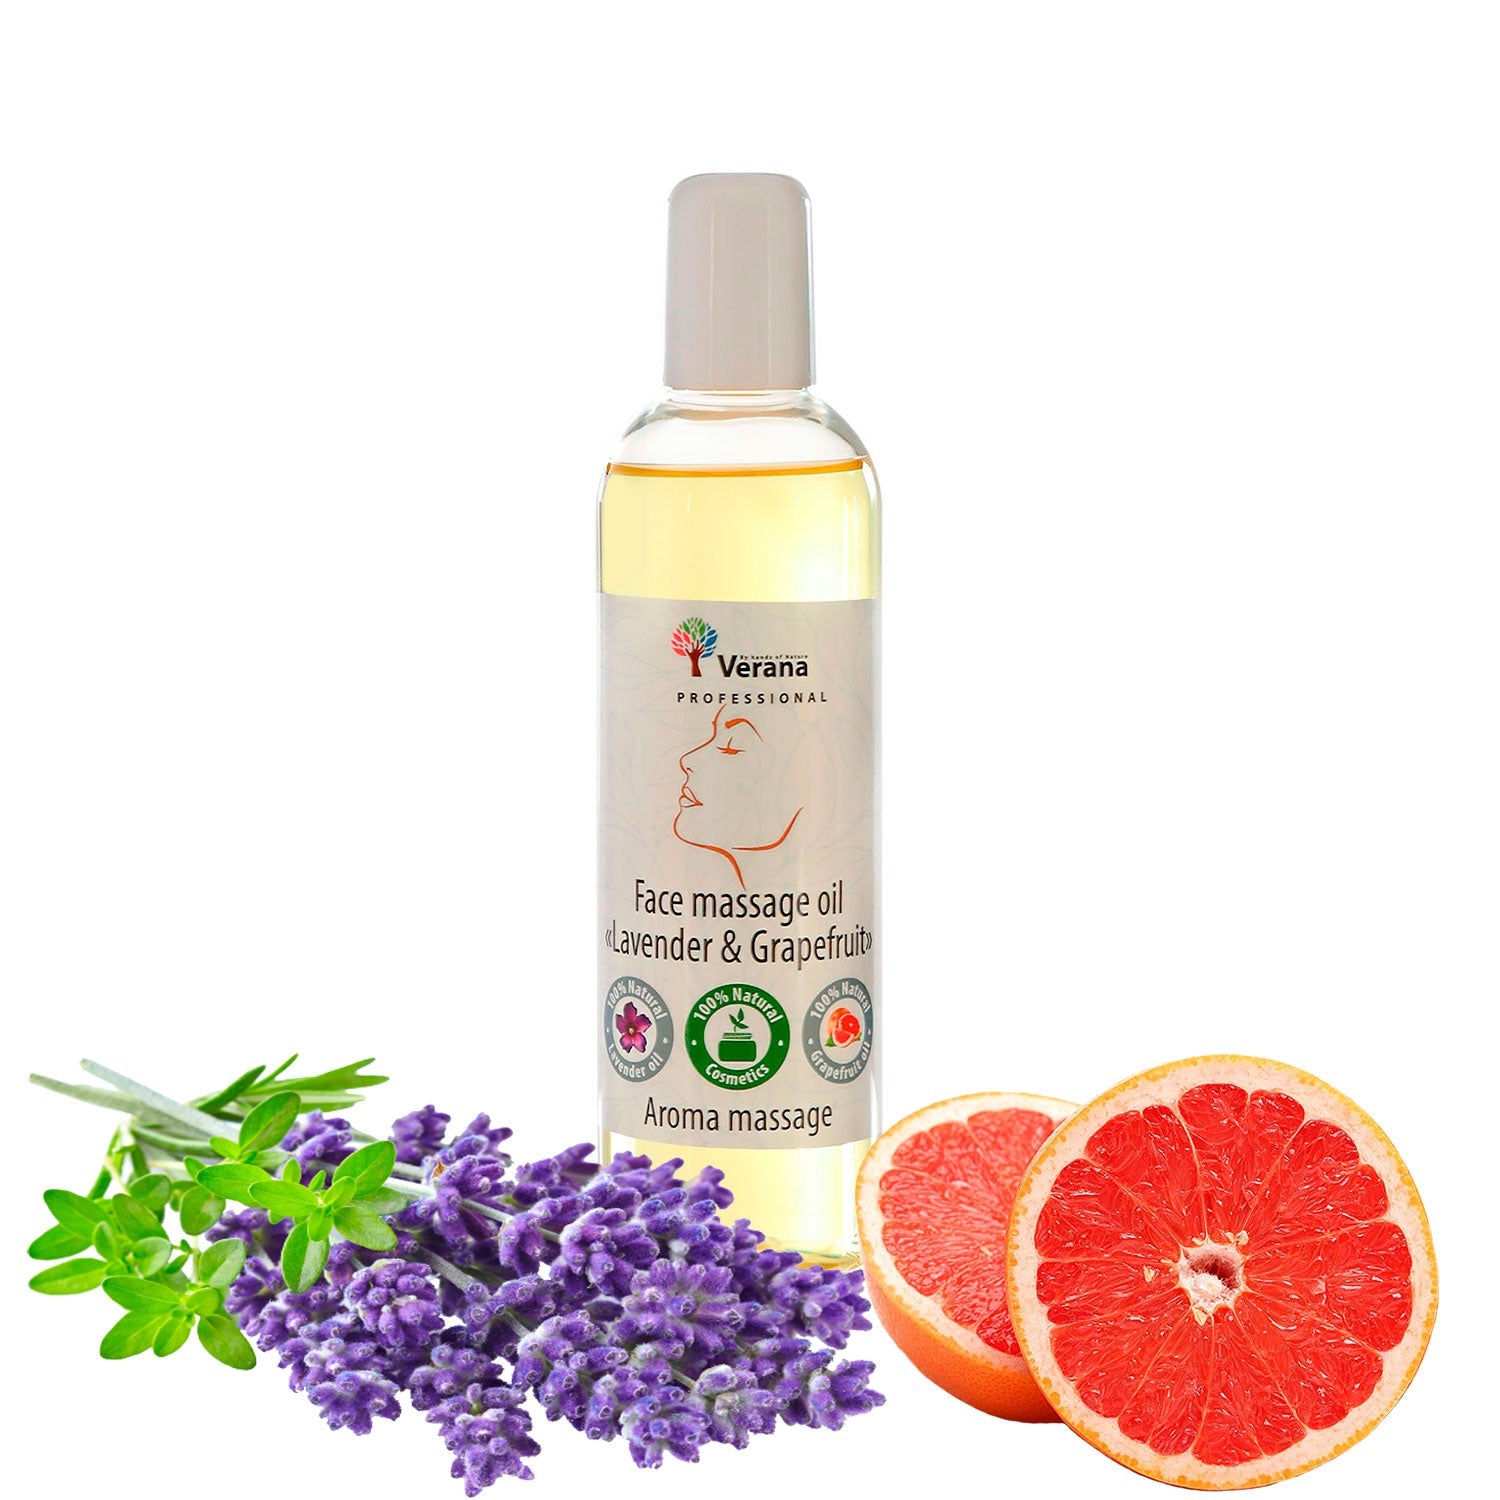 Verana 100% natürliches Gesichtsmassageöl Lavendel Grapefruit 250ml